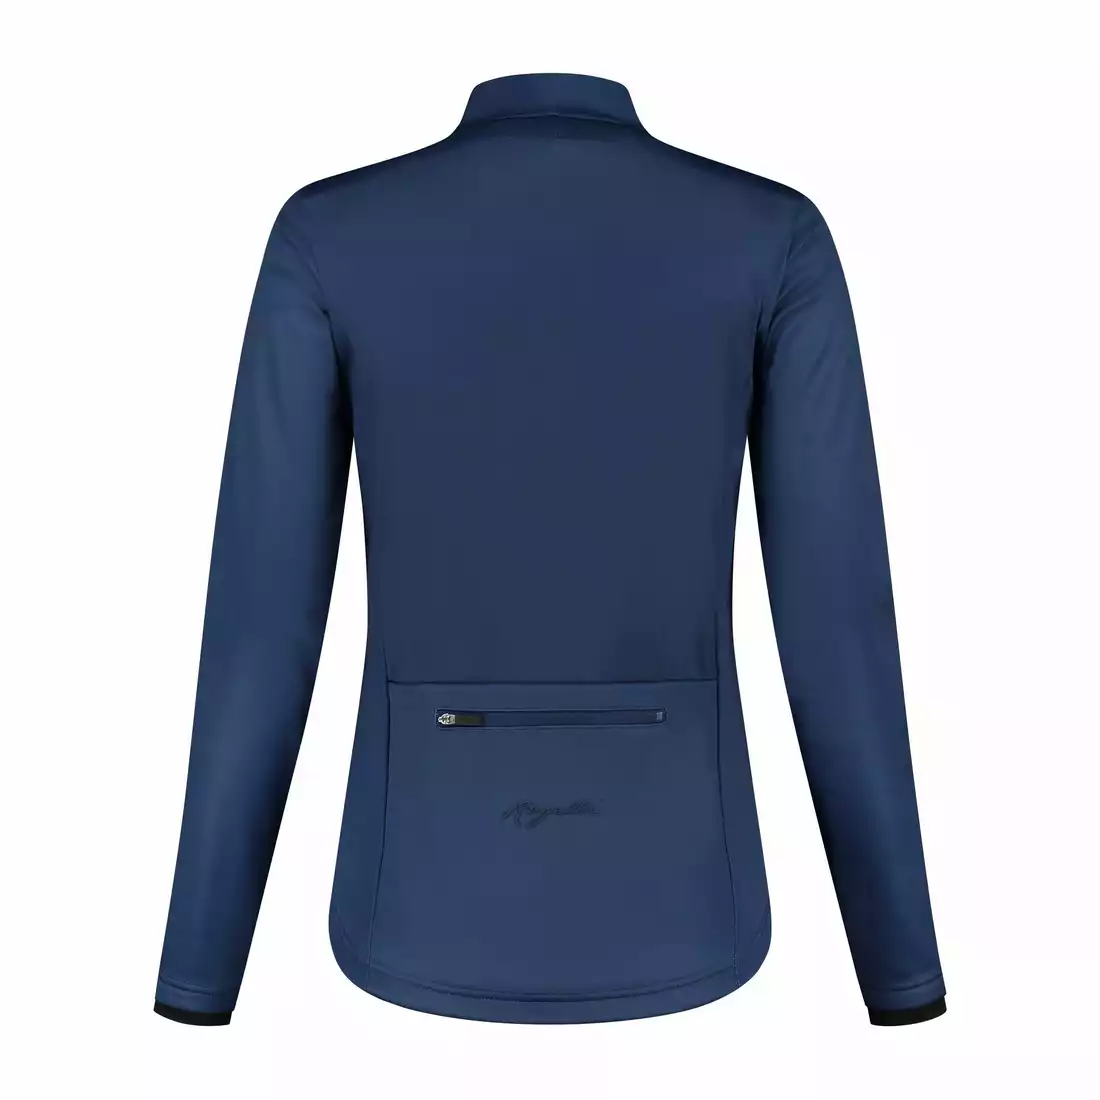 ROGELLI CORE women's winter cycling jacket, navy blue